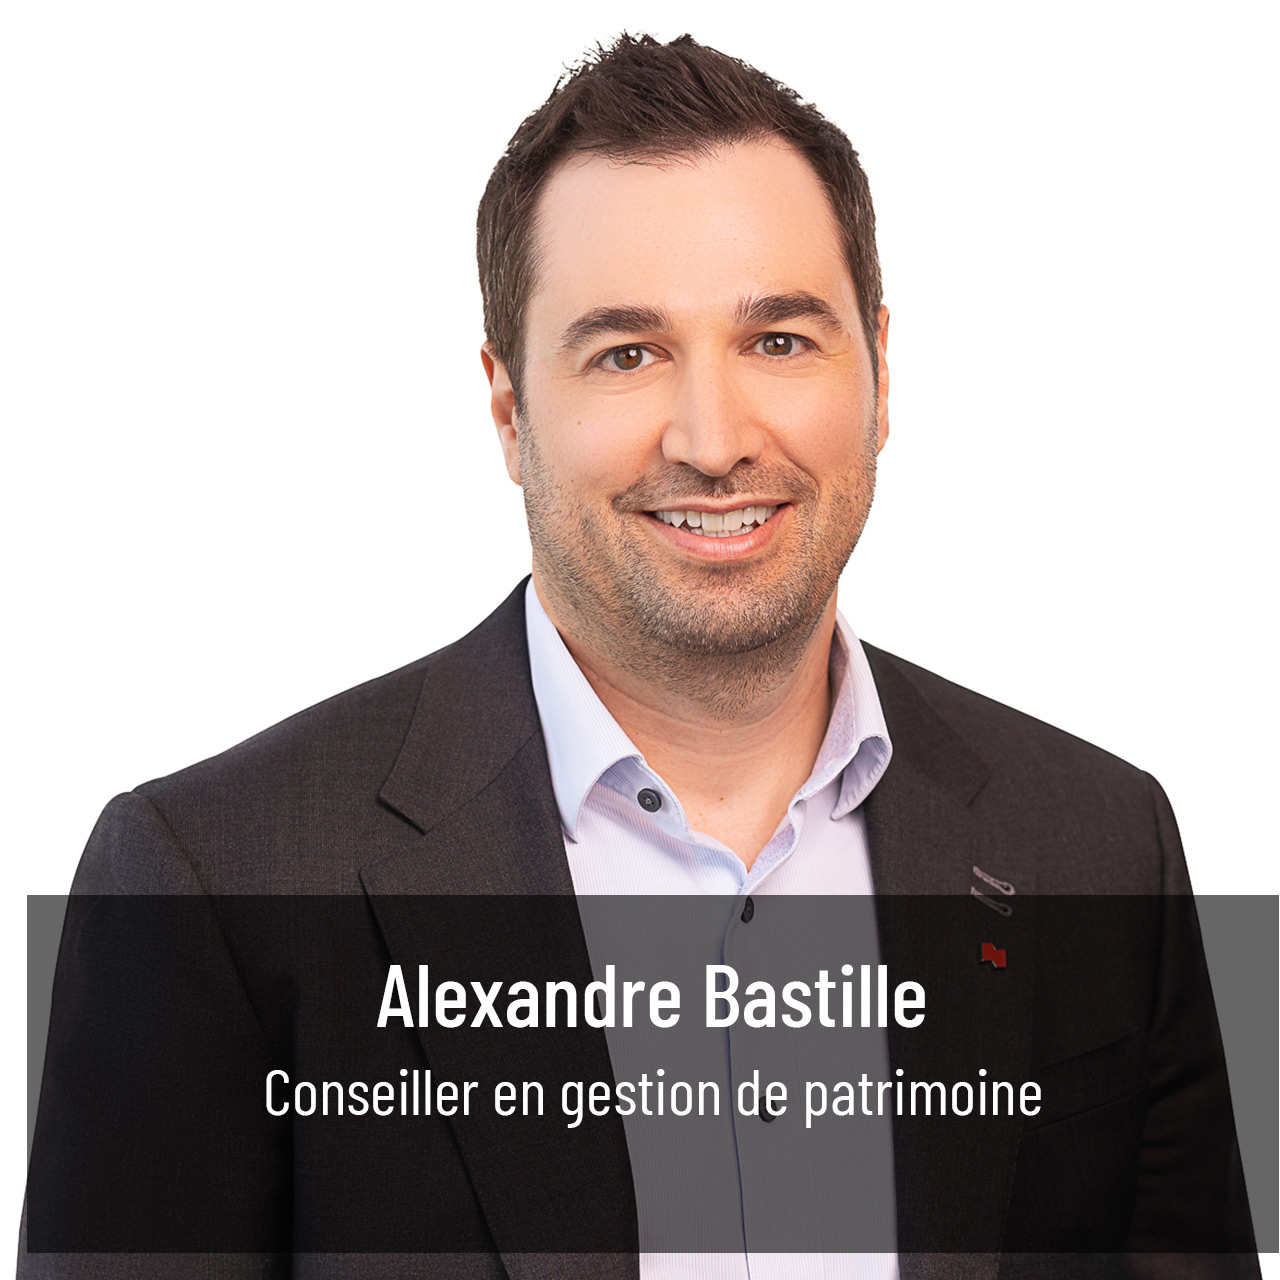 Alexandre Bastille